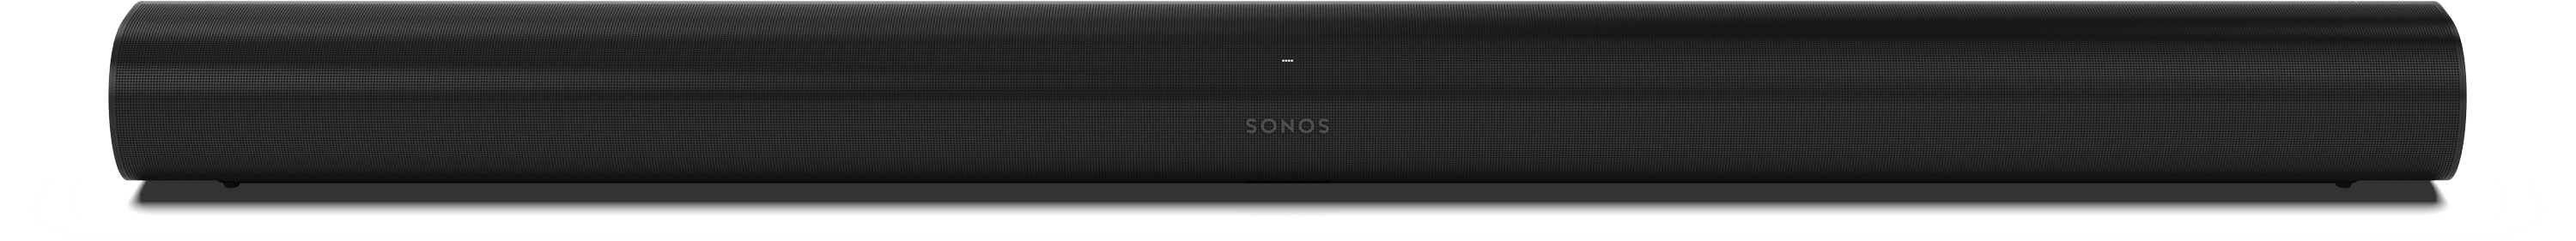 Sonos ARC, La barra de sonido inteligente premium para TV, películas, música, videojuegos y más